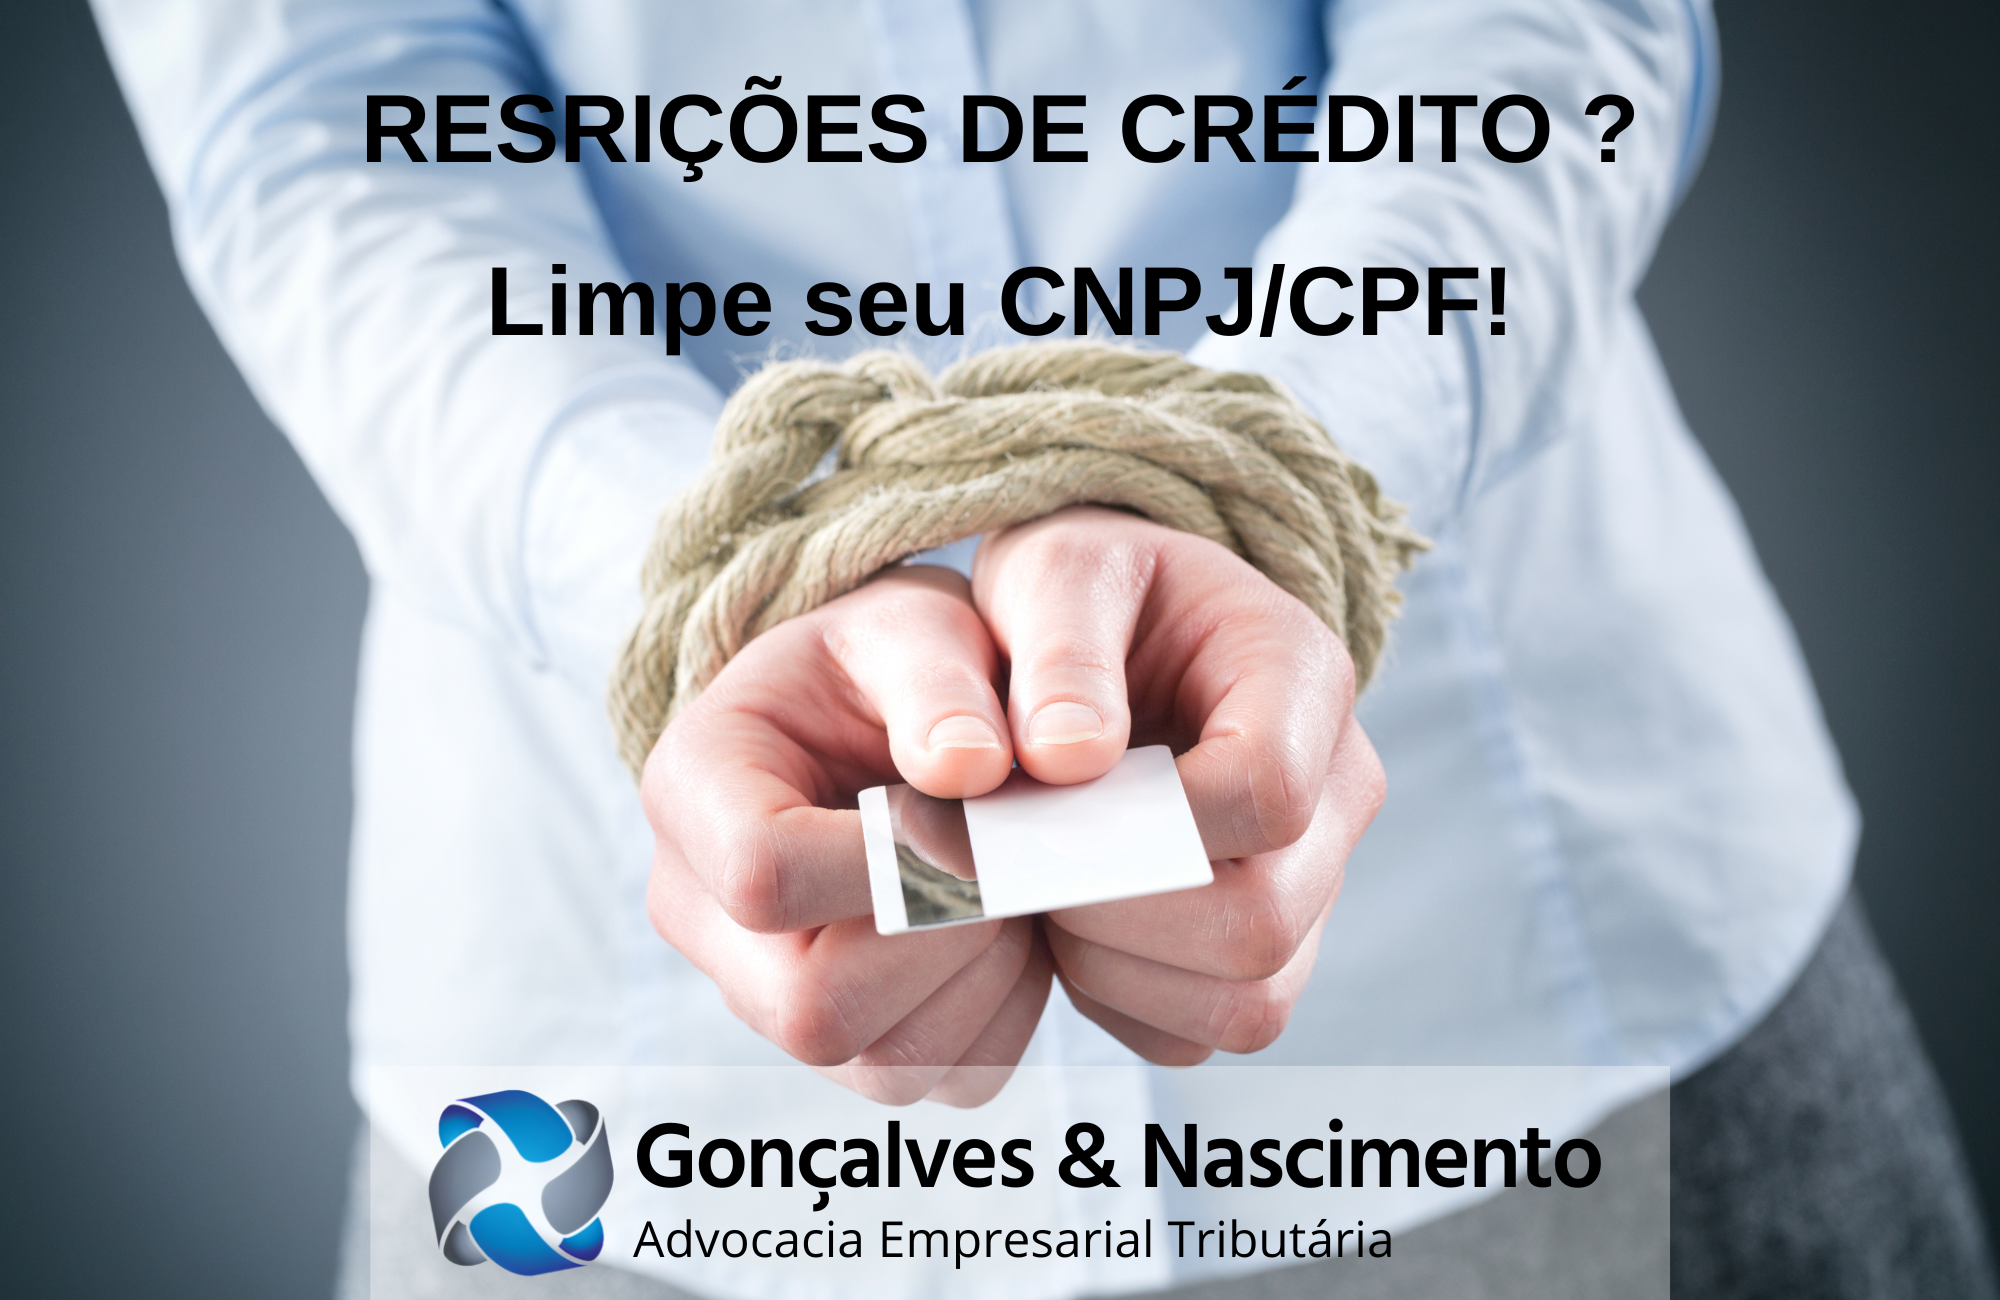 Gonçalves e Nascimento - Advocacia Empresarial Tributária: Restrição ao Crédito